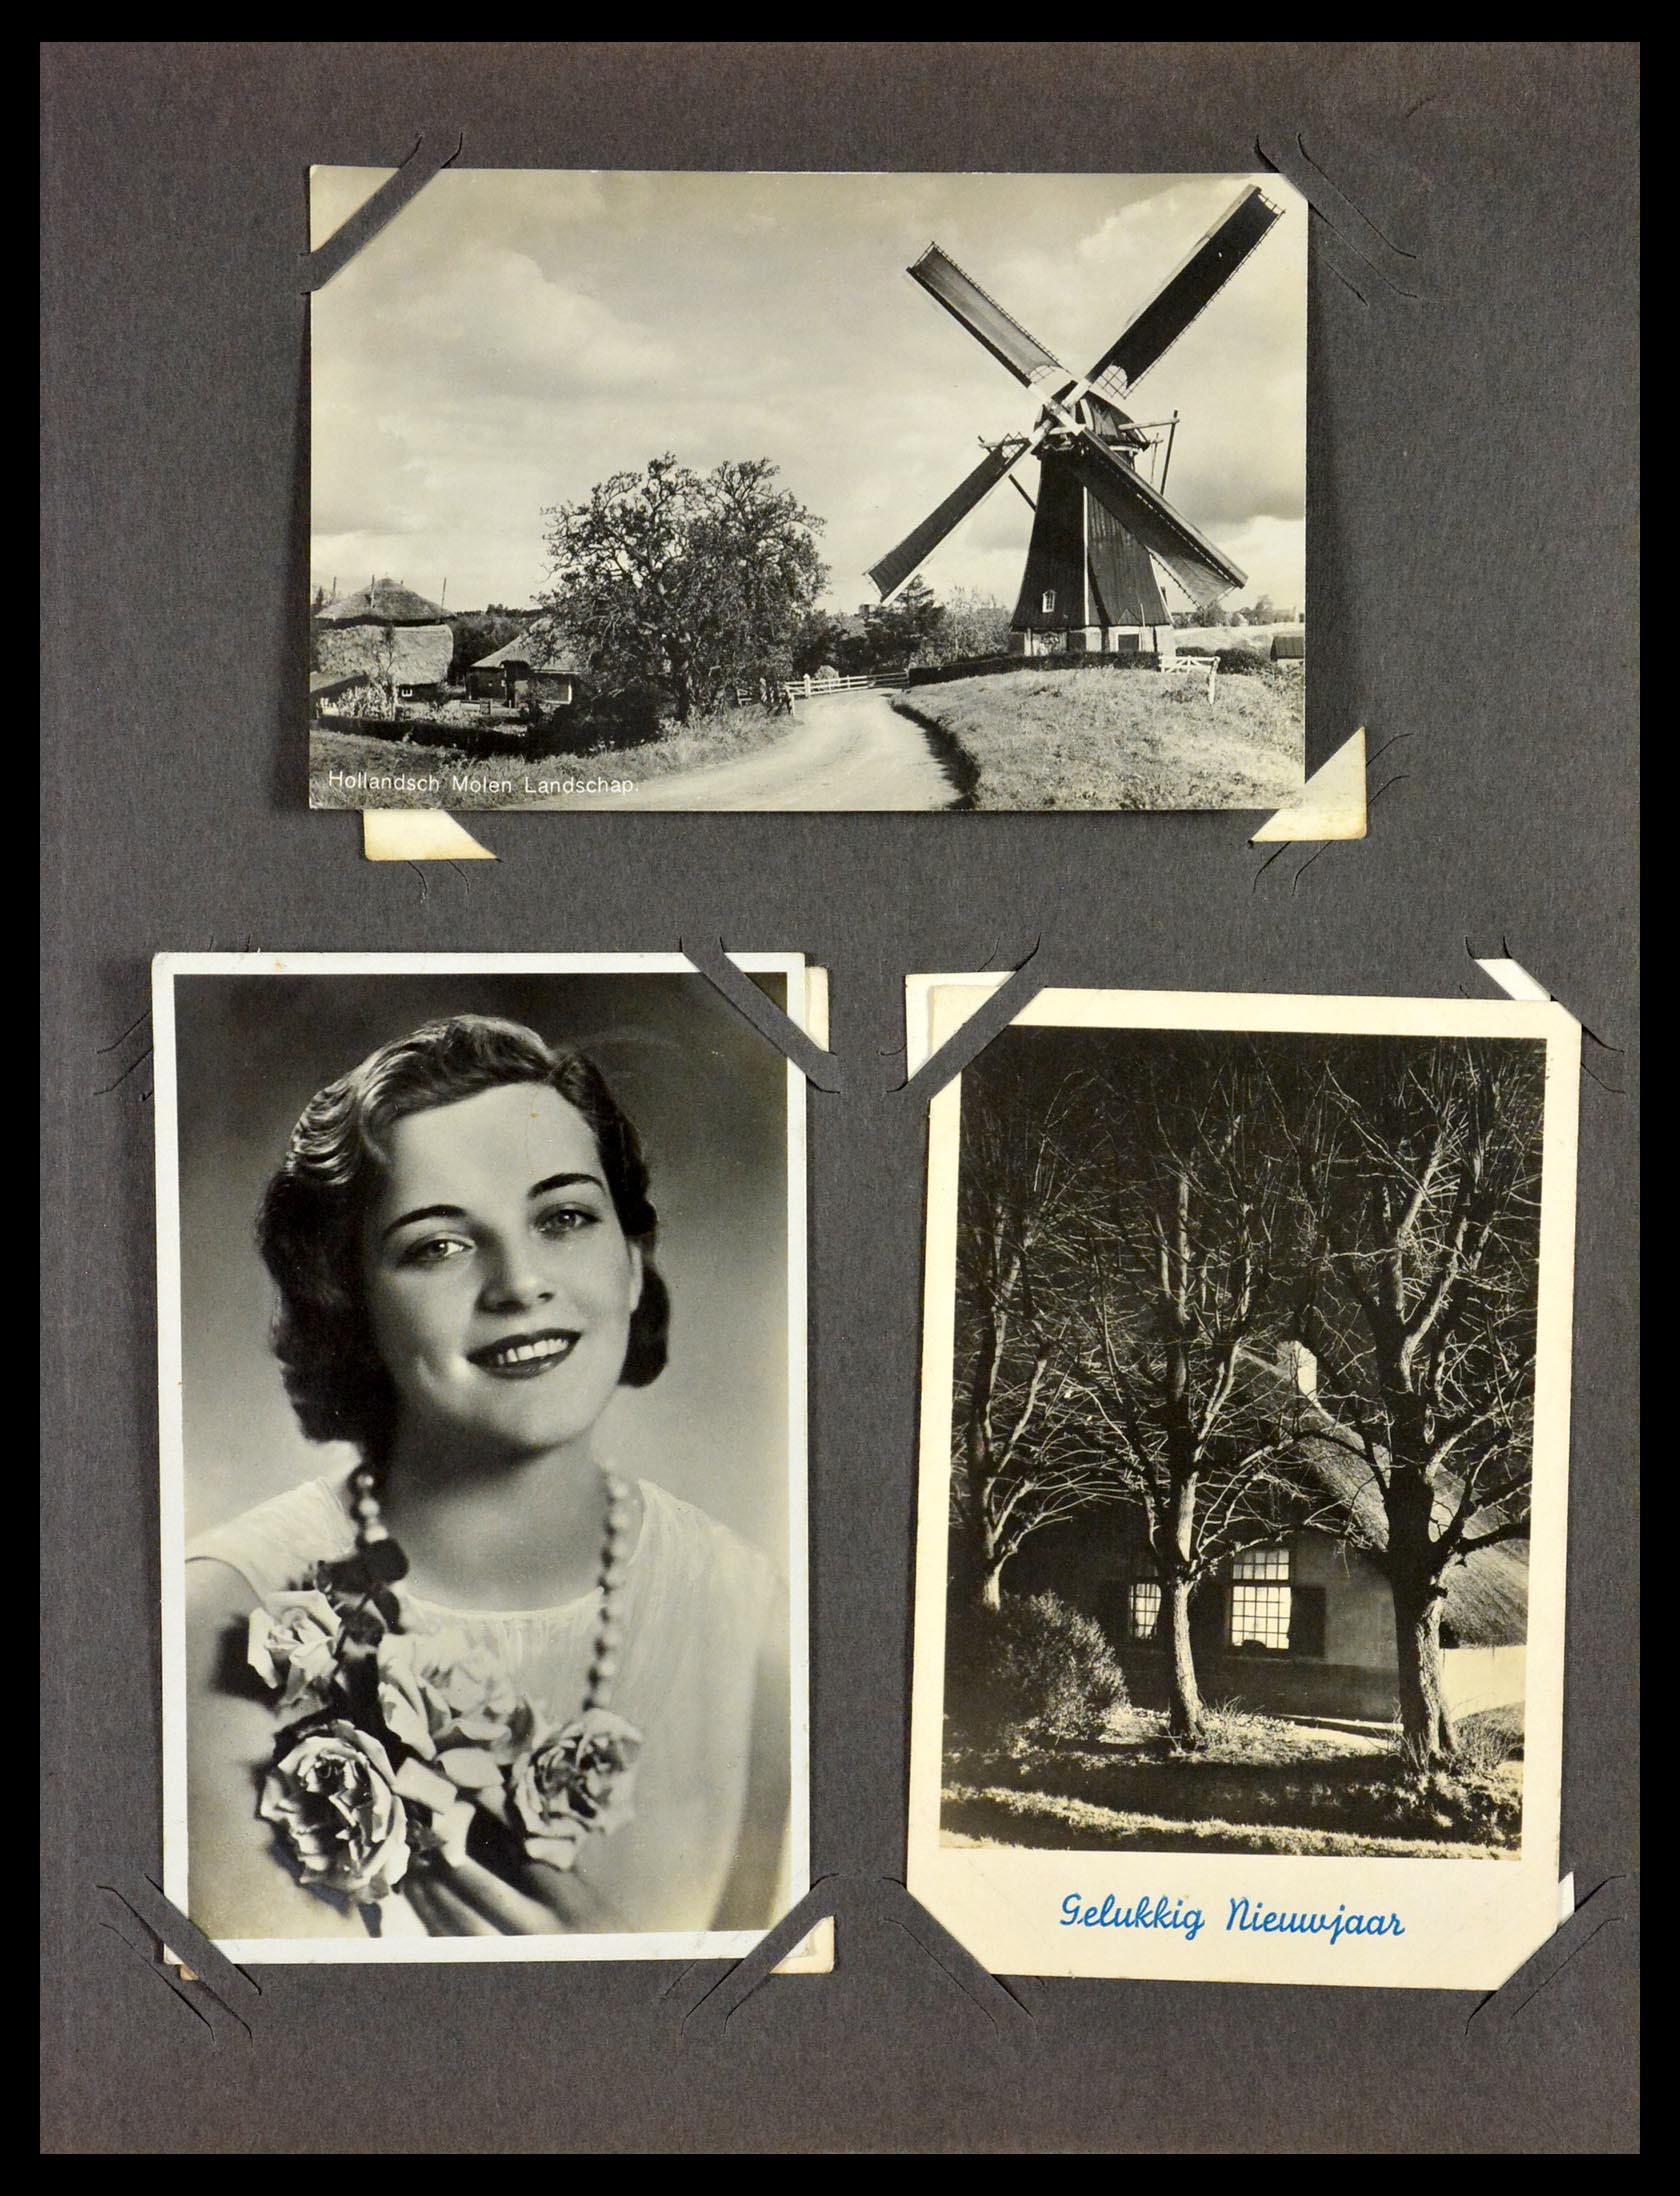 29518 010 - 29518 Nederland ansichtkaarten 1939-1940.